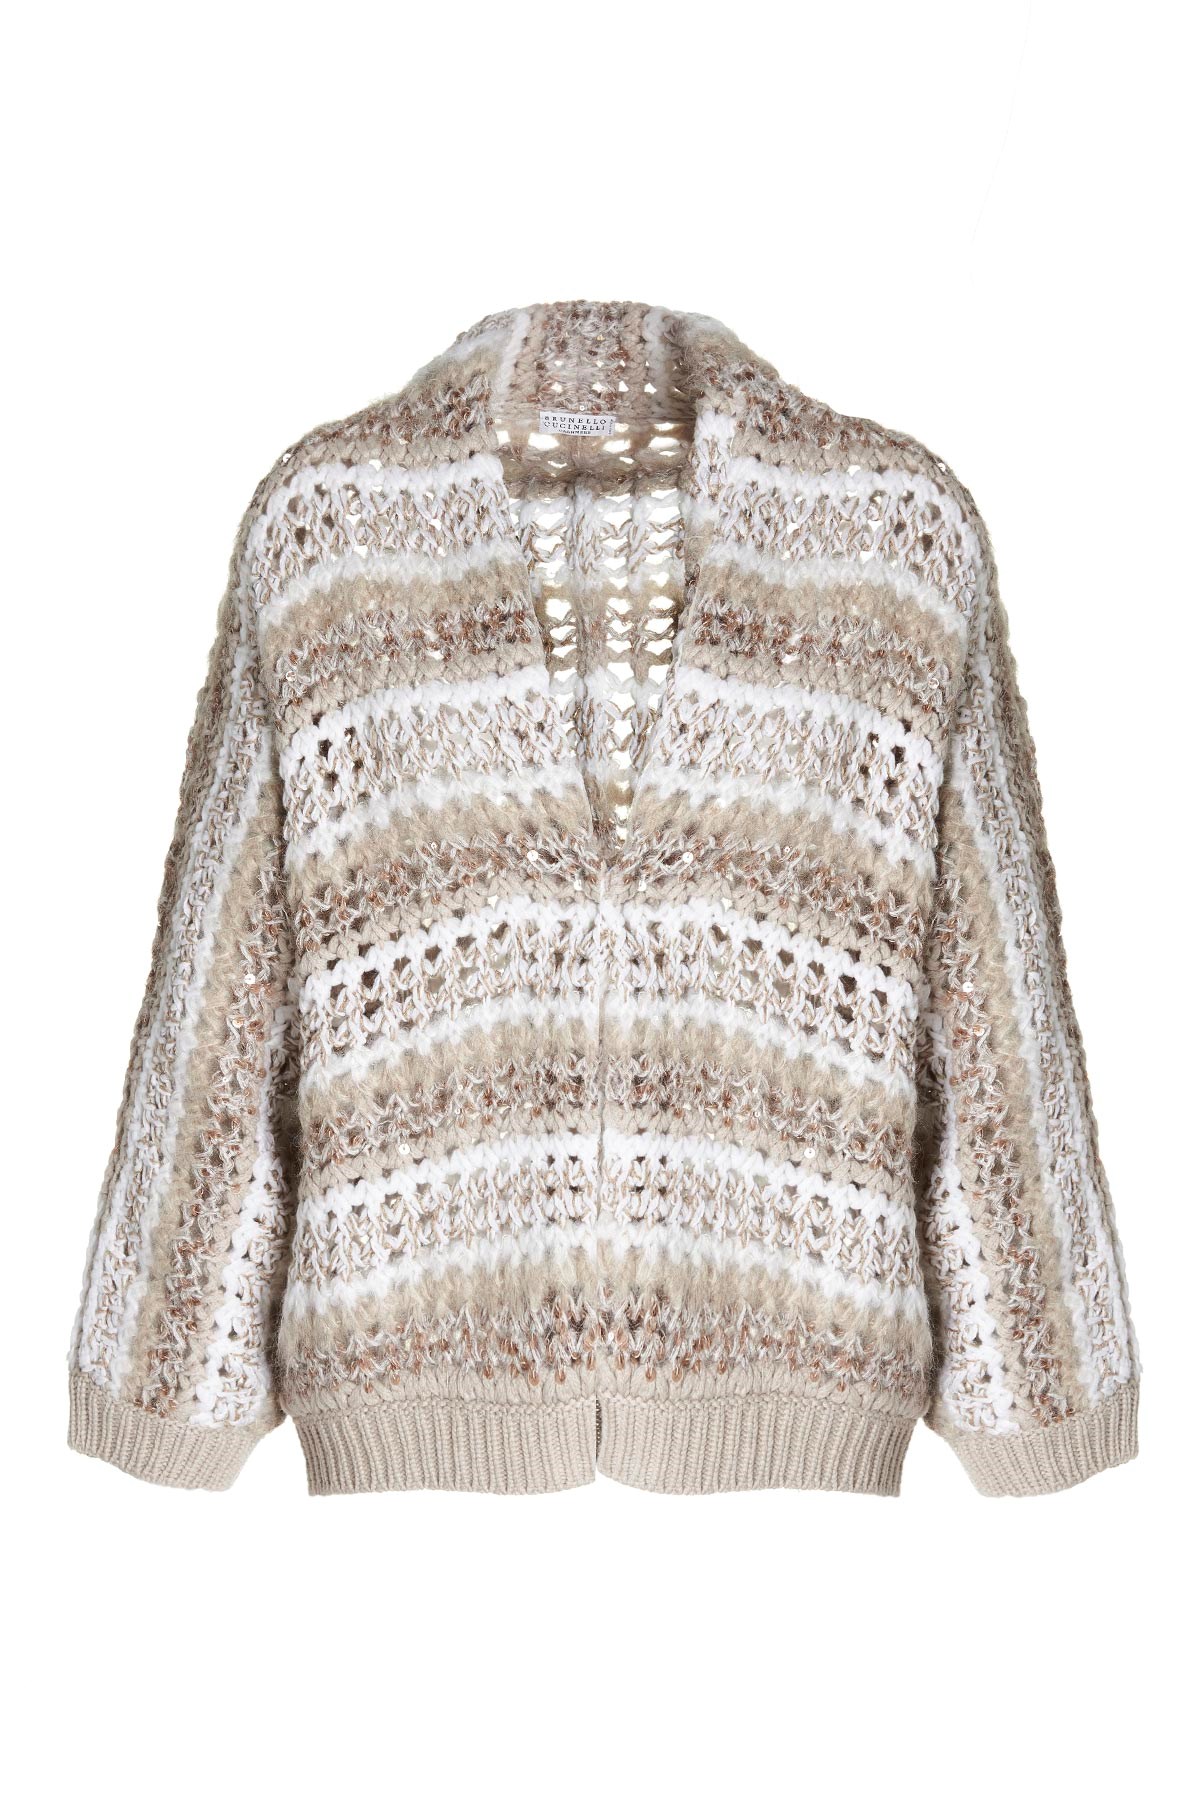 BRUNELLO CUCINELLI Sequin Cashmere Sweater